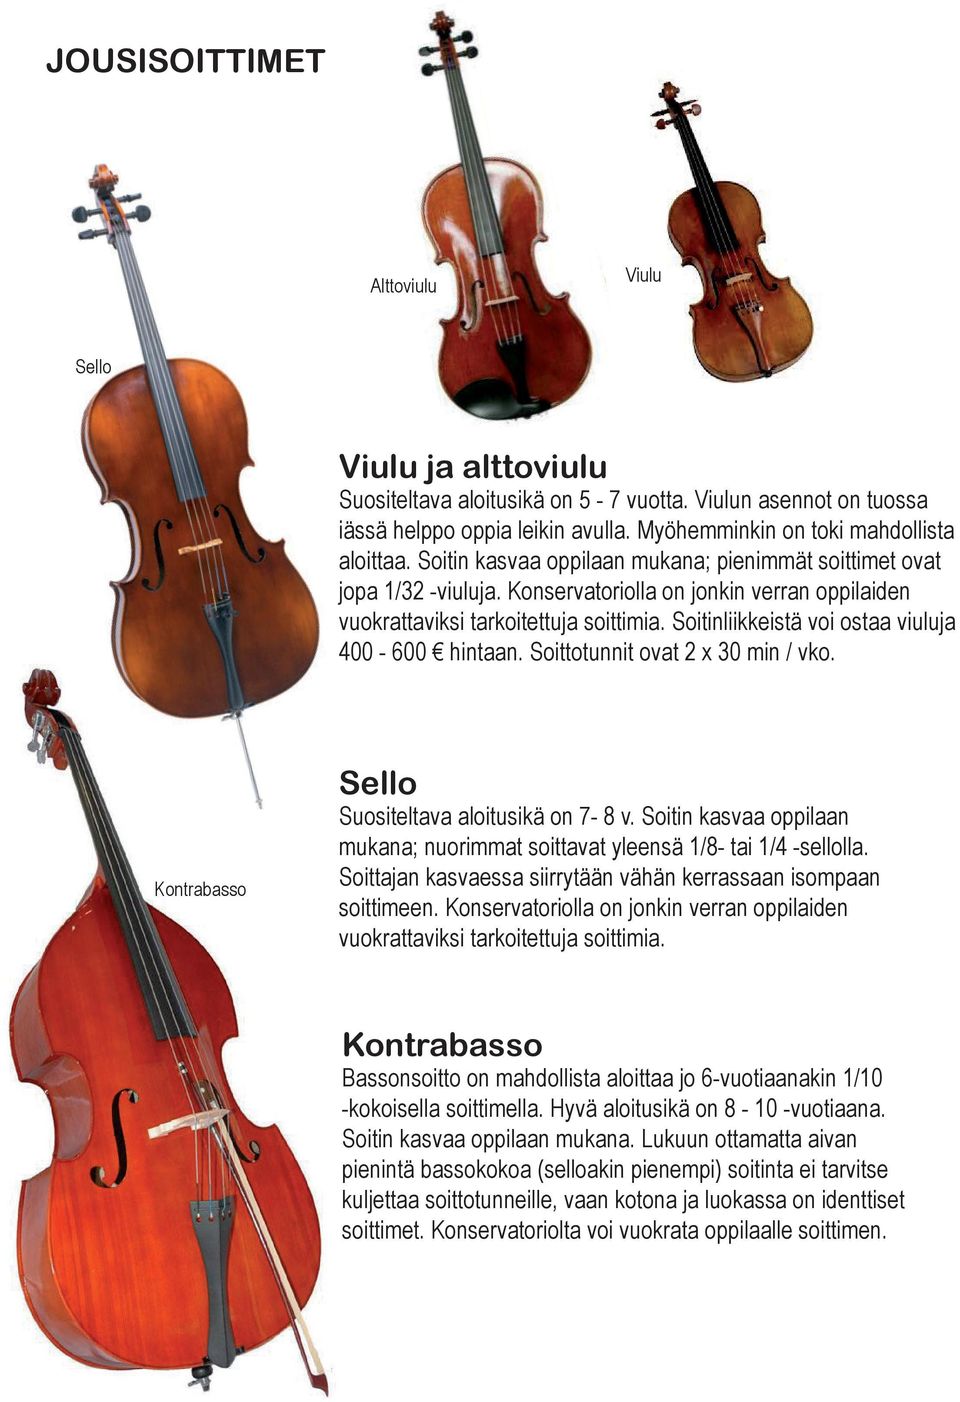 Soitinliikkeistä voi ostaa viuluja 400-600 hintaan. Soittotunnit ovat 2 x 30 min / vko. Kontrabasso Sello Suositeltava aloitusikä on 7-8 v.